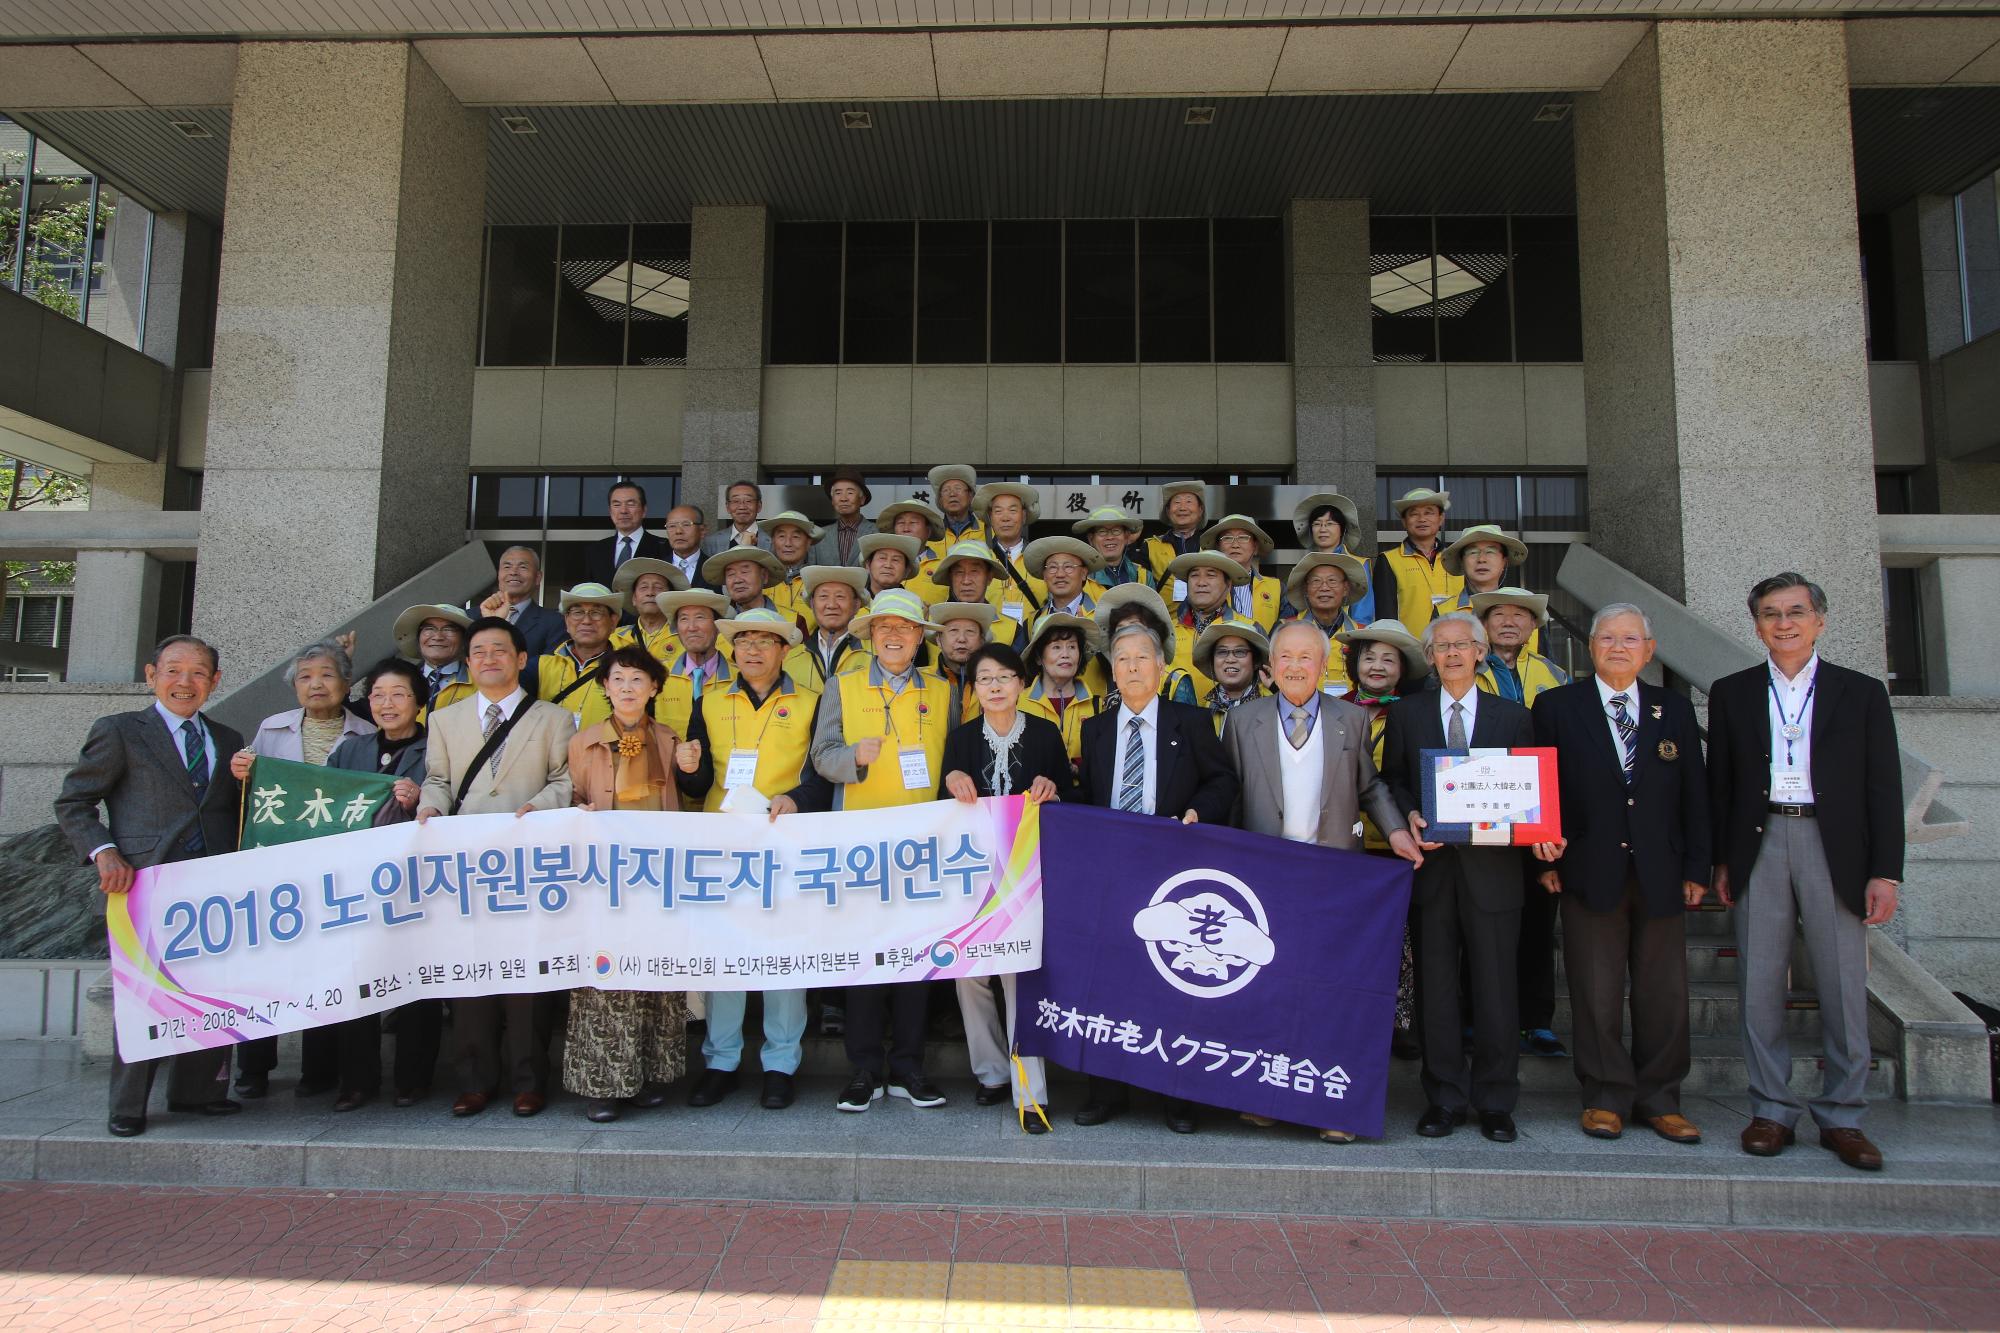 茨木市老人クラブ連合会と大韓老人会の集合写真